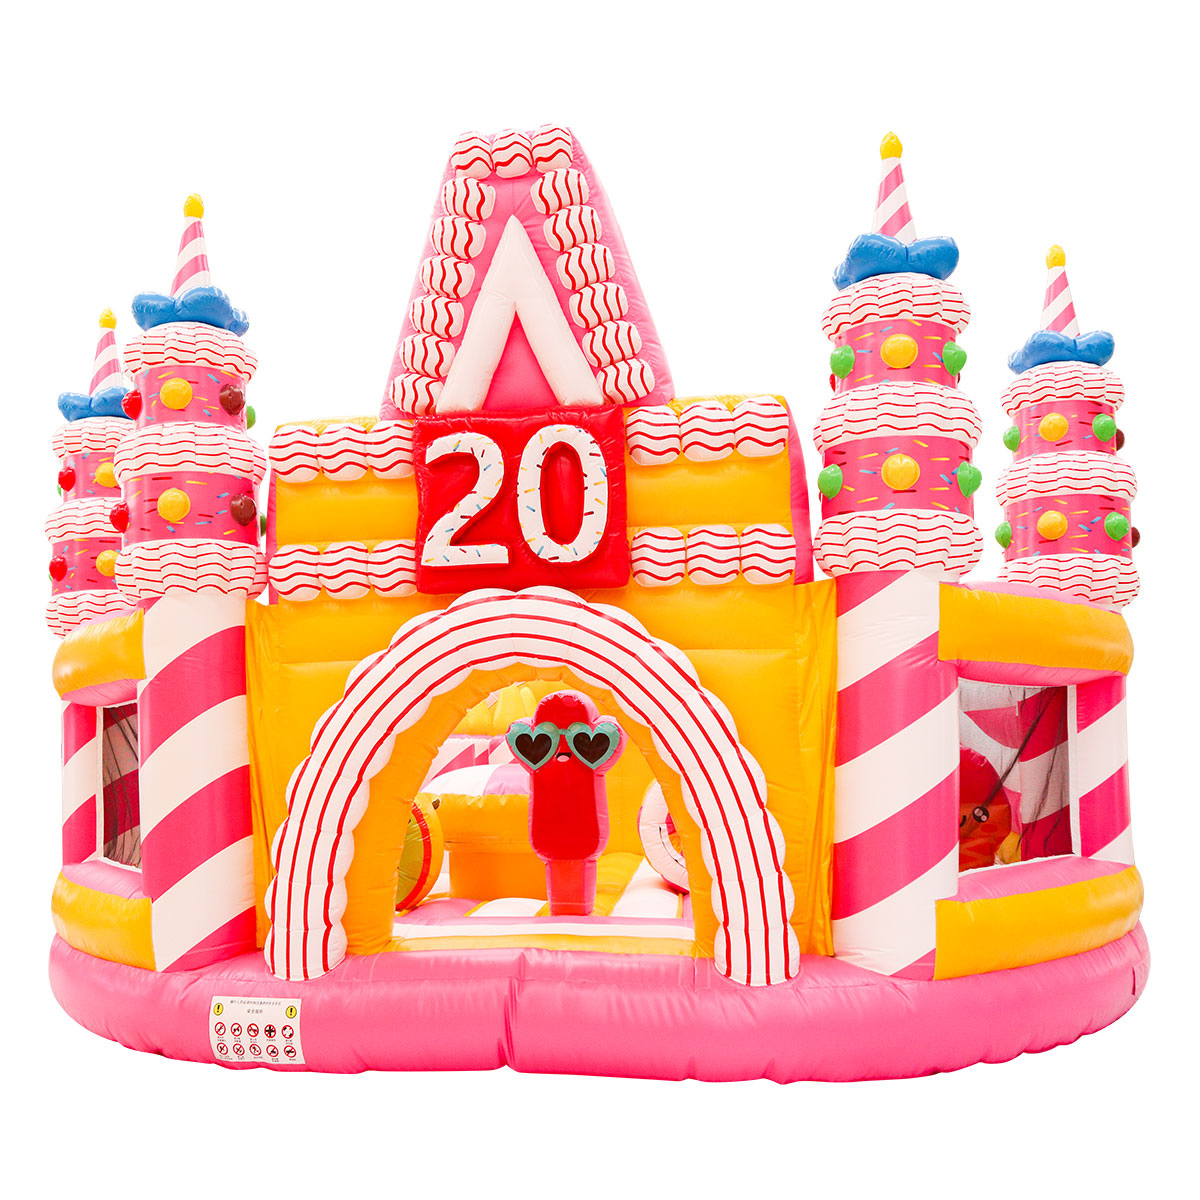 Inflatable birthday cake playgroundGI020